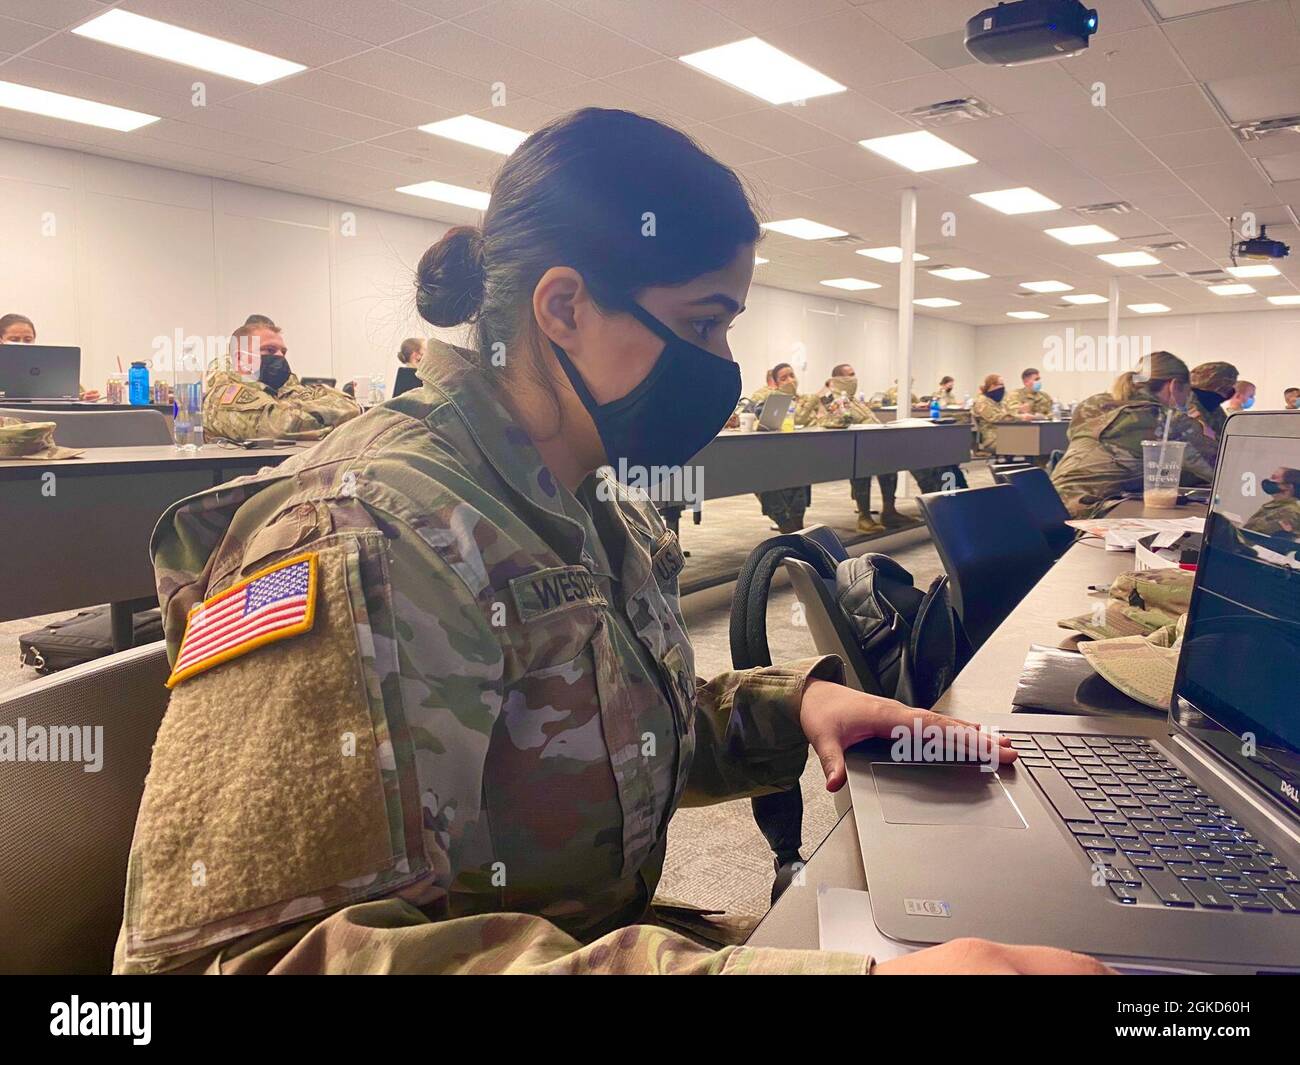 Ogden, UT- SPC Shifali Westpfahl, ein chirurgischer Techniker der US Army Reserve, ist kürzlich Mitglied des 228. Combat Support Hospital in Ft. Sam Houston, San Antonio, Texas. Stockfoto